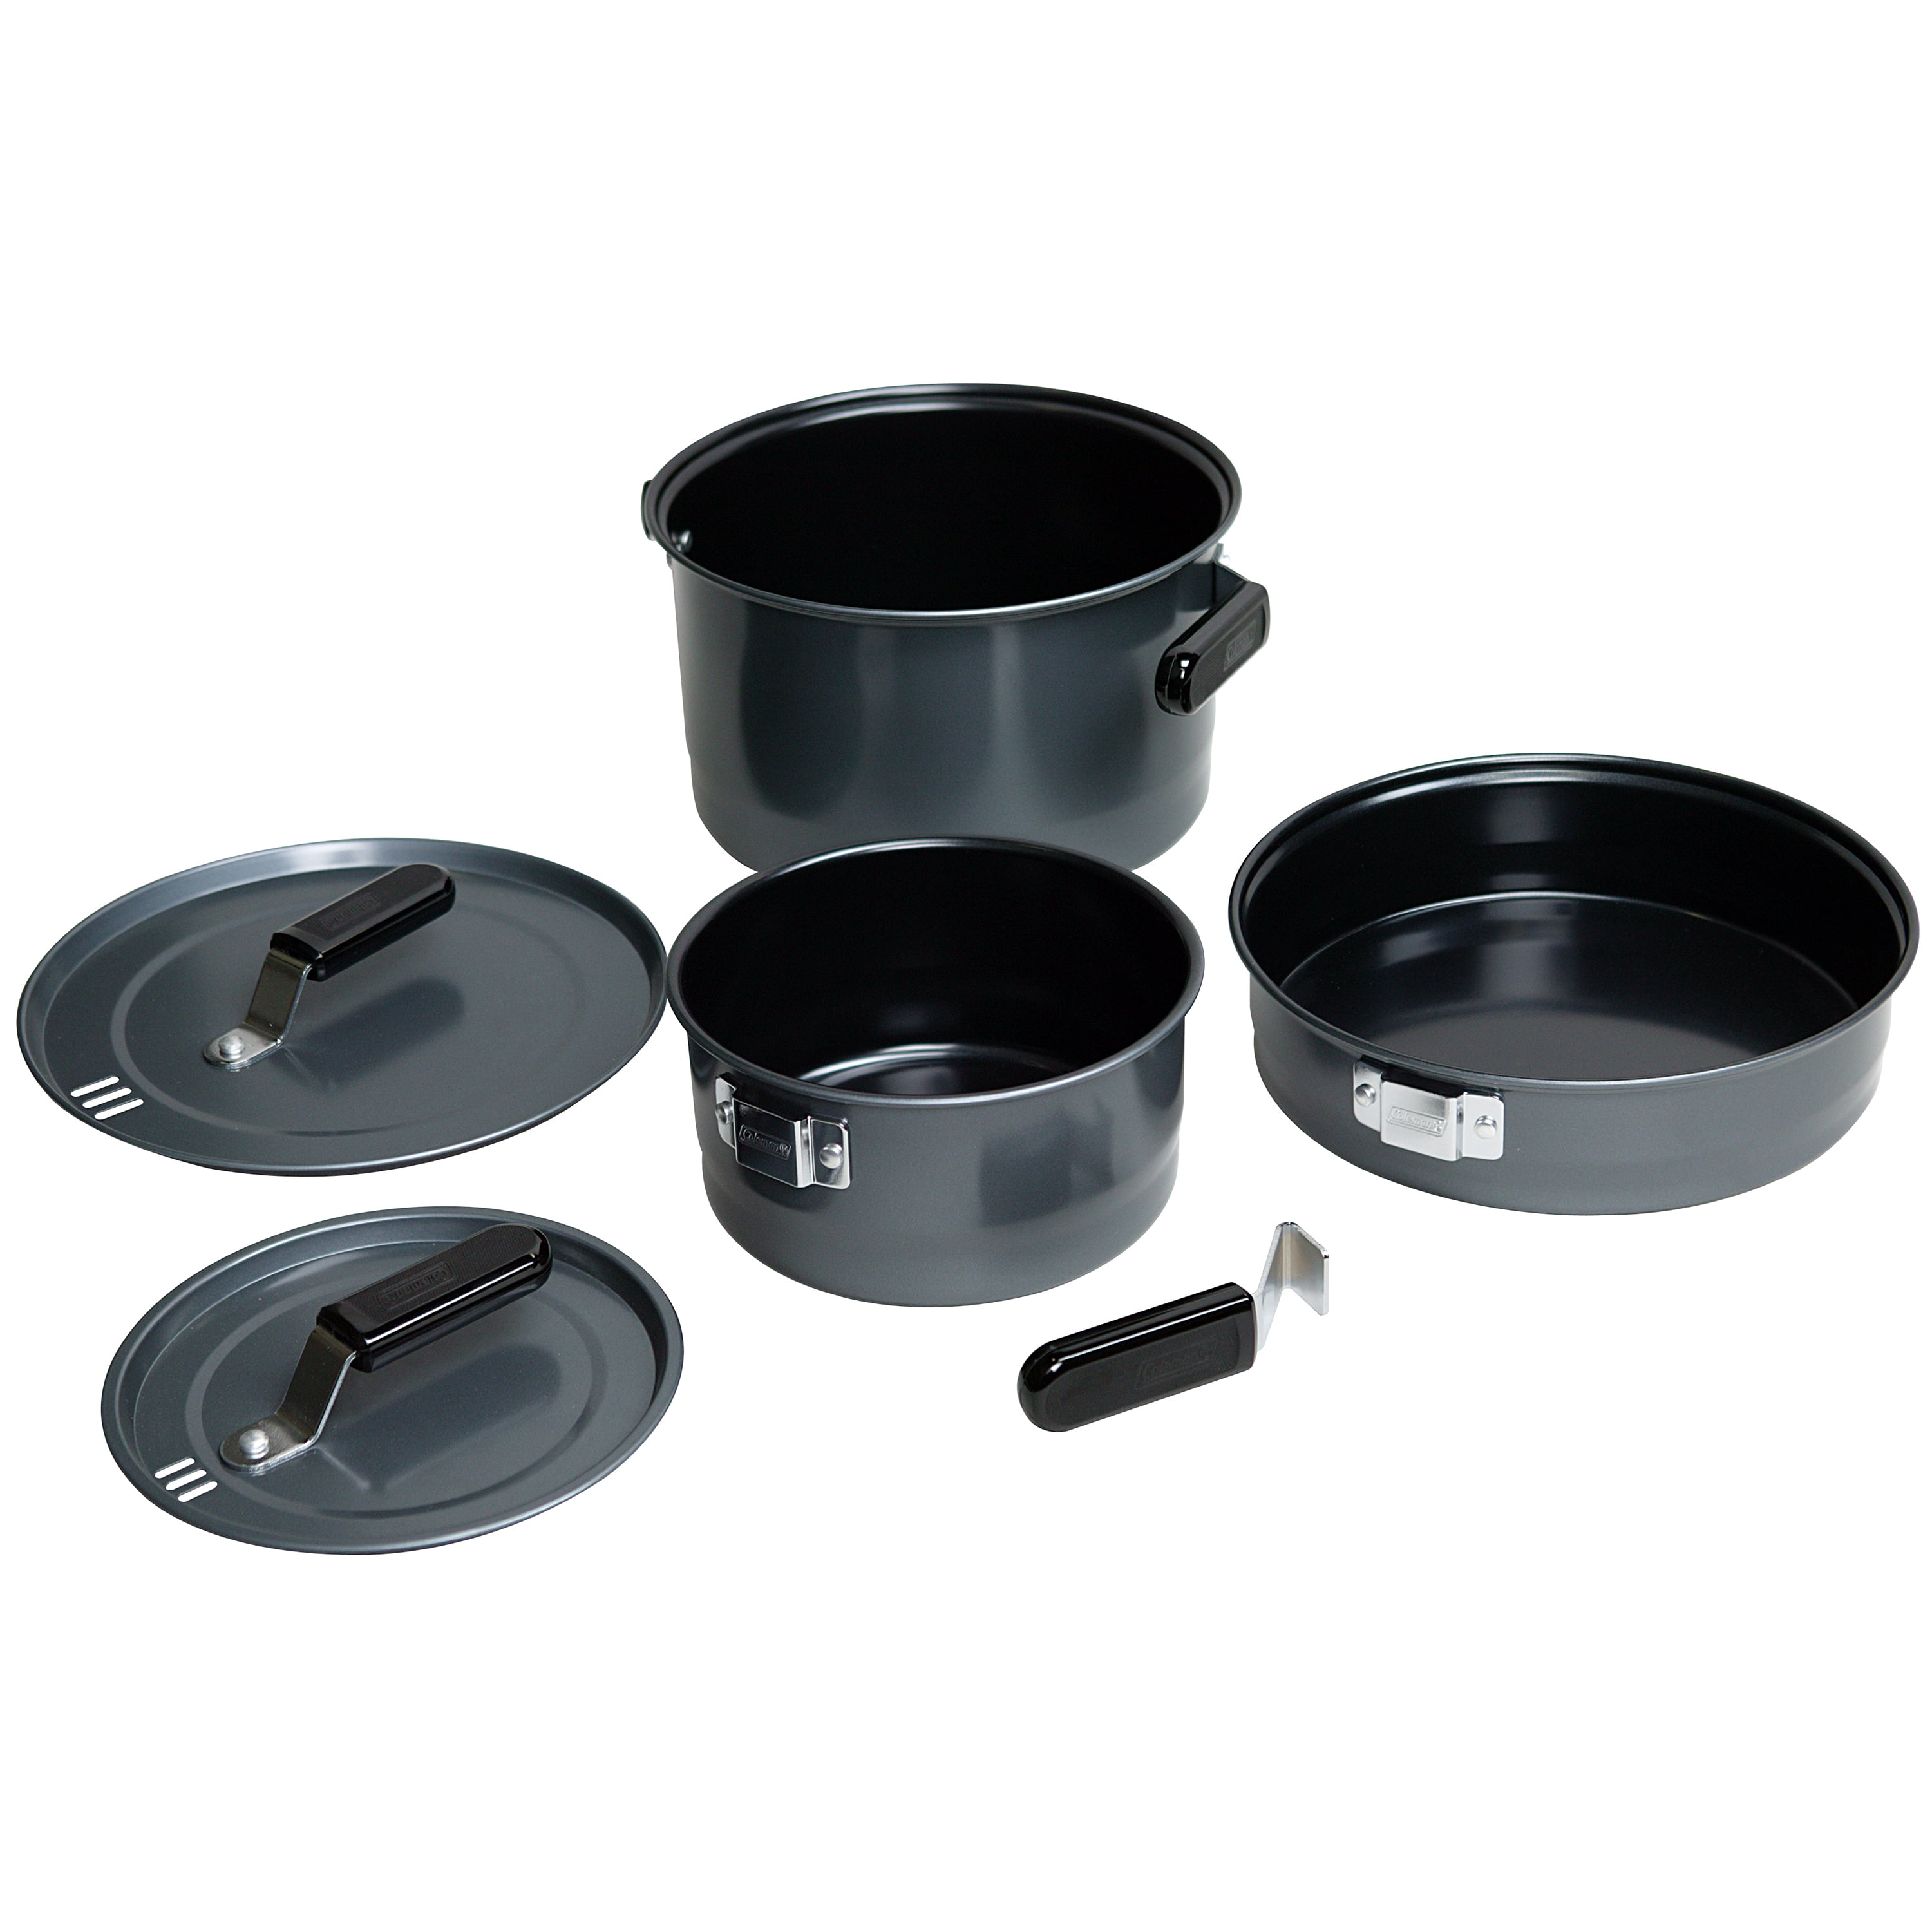 1 plate/lid 3pc Cookware-mess kit Stainless 2 Pots Bonus FireDisK & Ferro Rod 